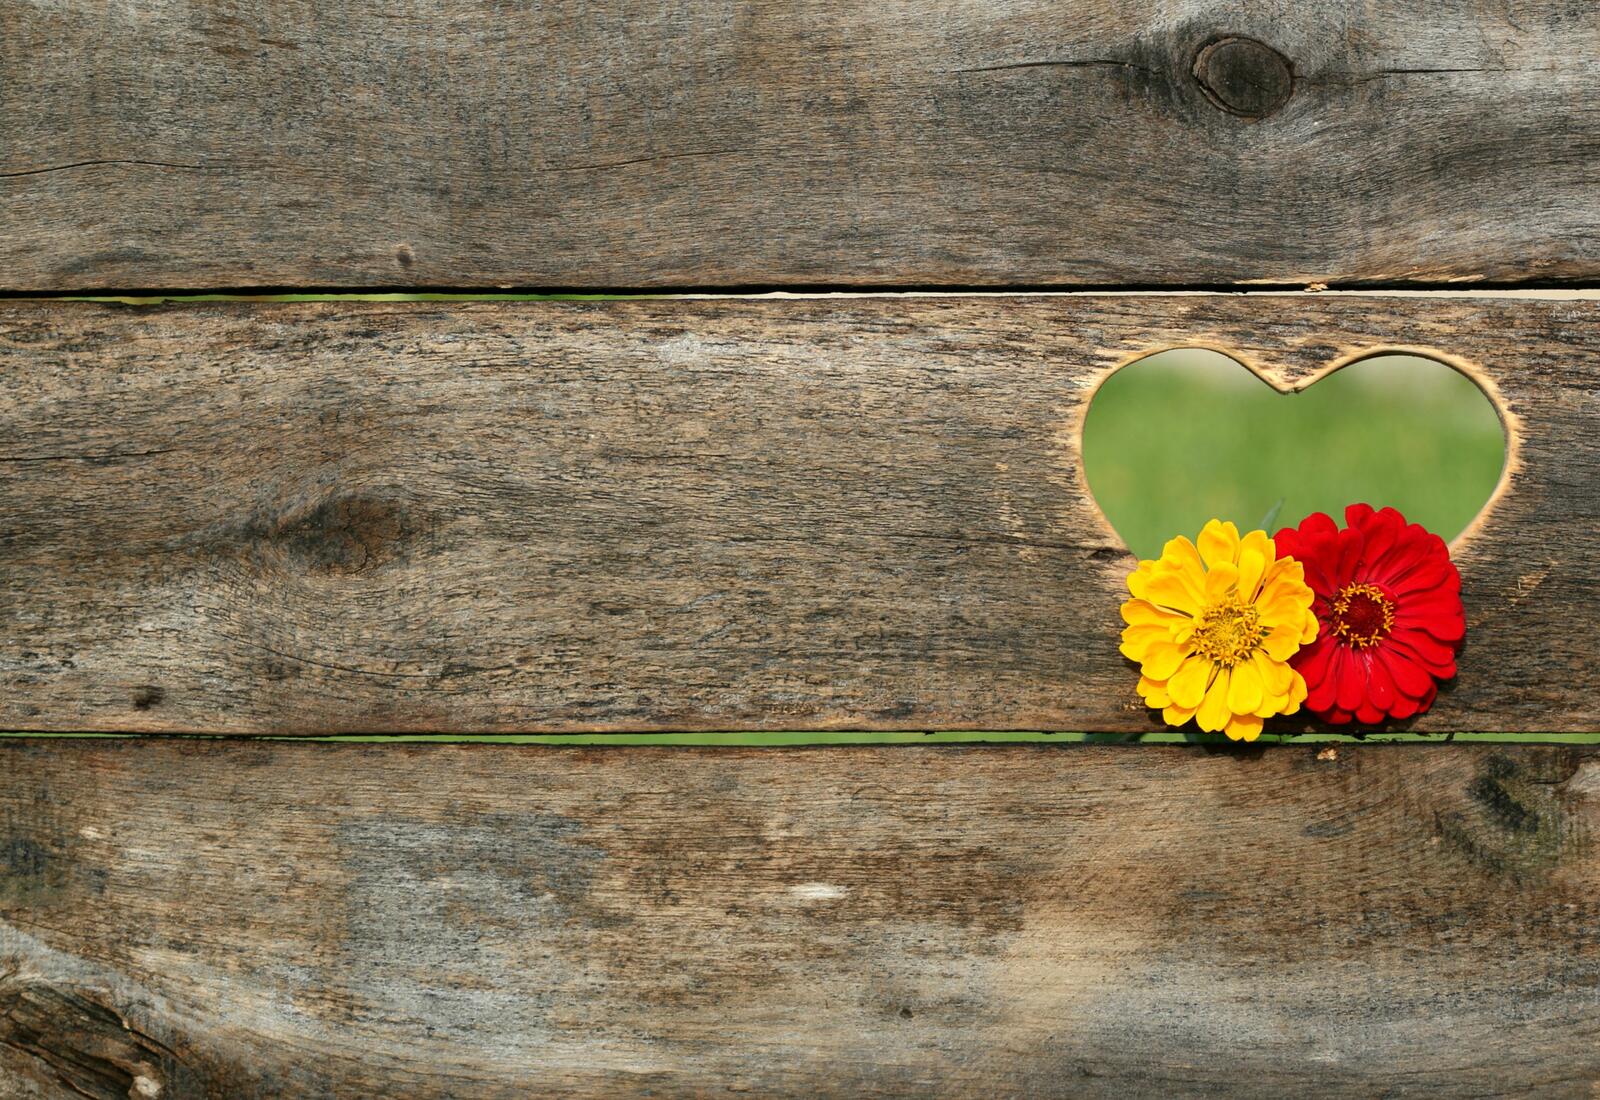 Бесплатное фото Деревянный забор с вырезанным сердечком с цветами